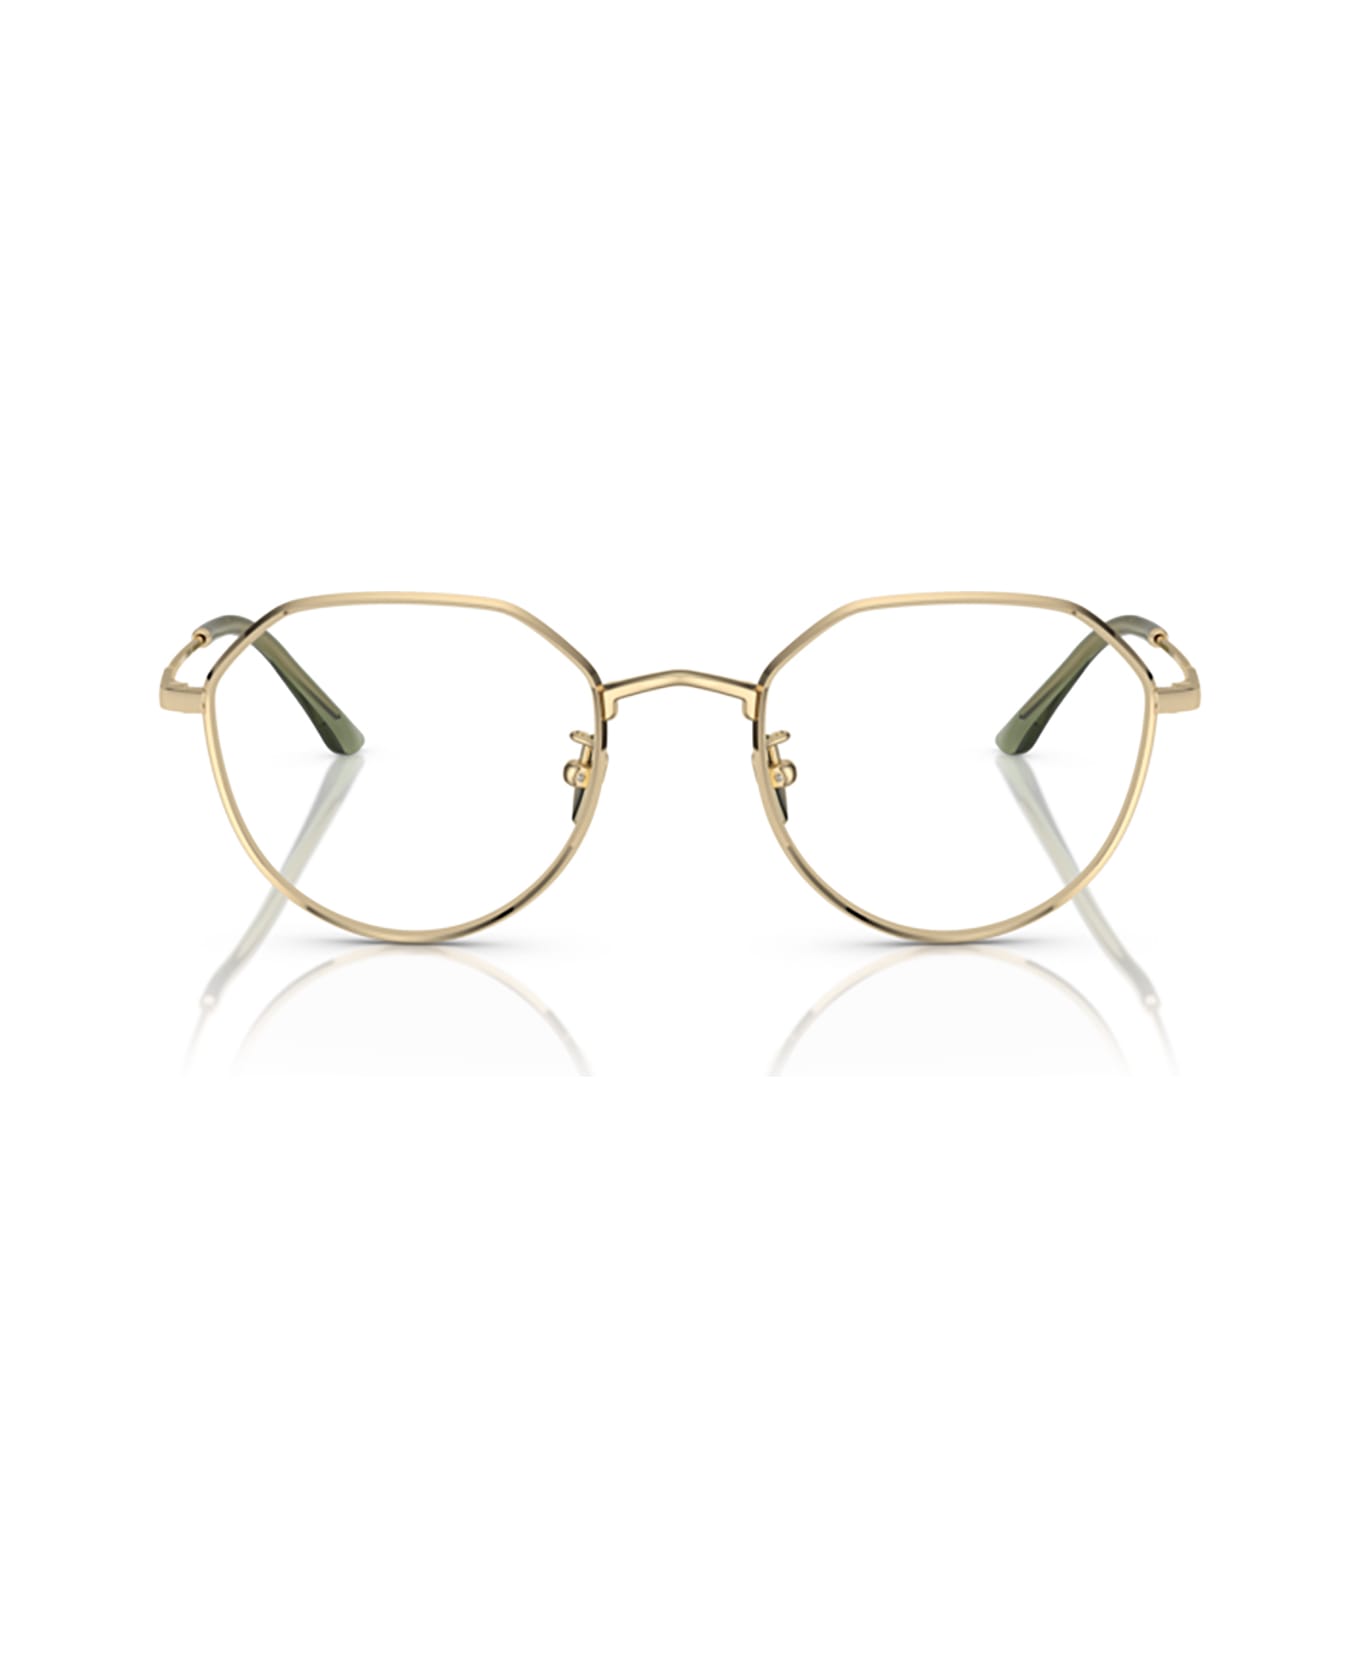 Giorgio Armani Ar5142 Pale Gold Glasses - Pale Gold